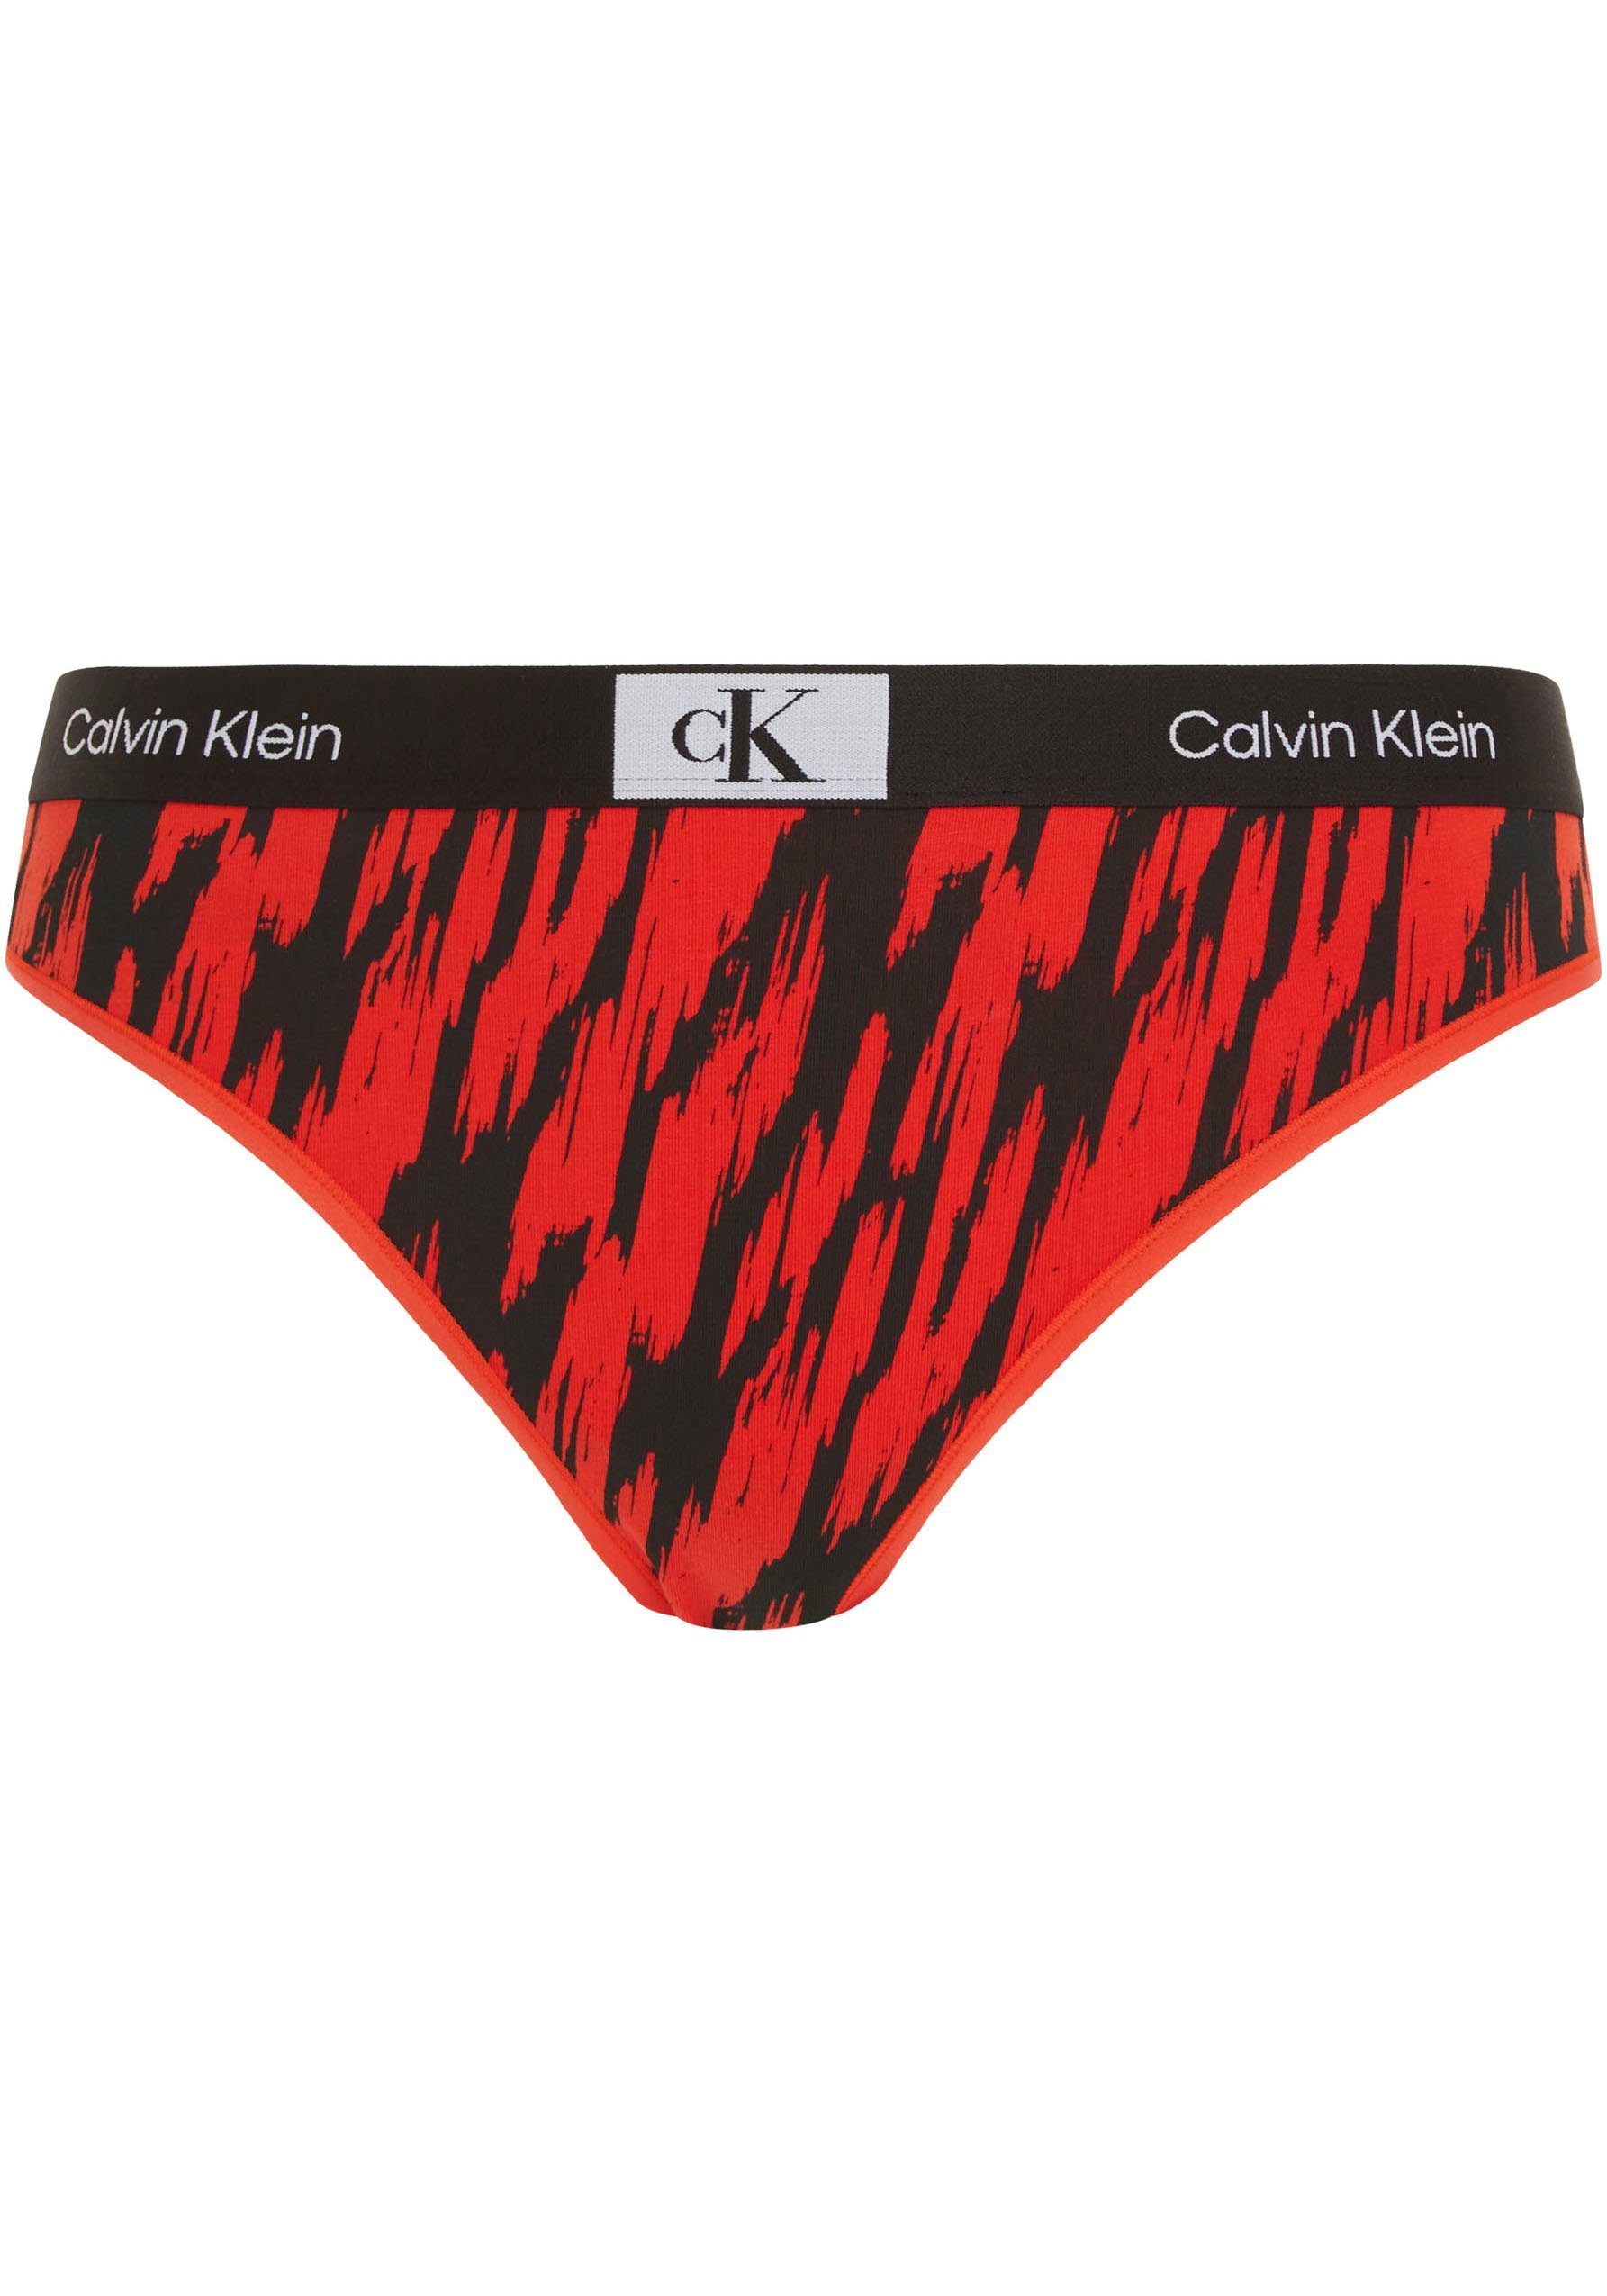 Calvin Klein Underwear THONG MODERN Alloverprint mit BLUR-LEOPARD/HAZARD T-String